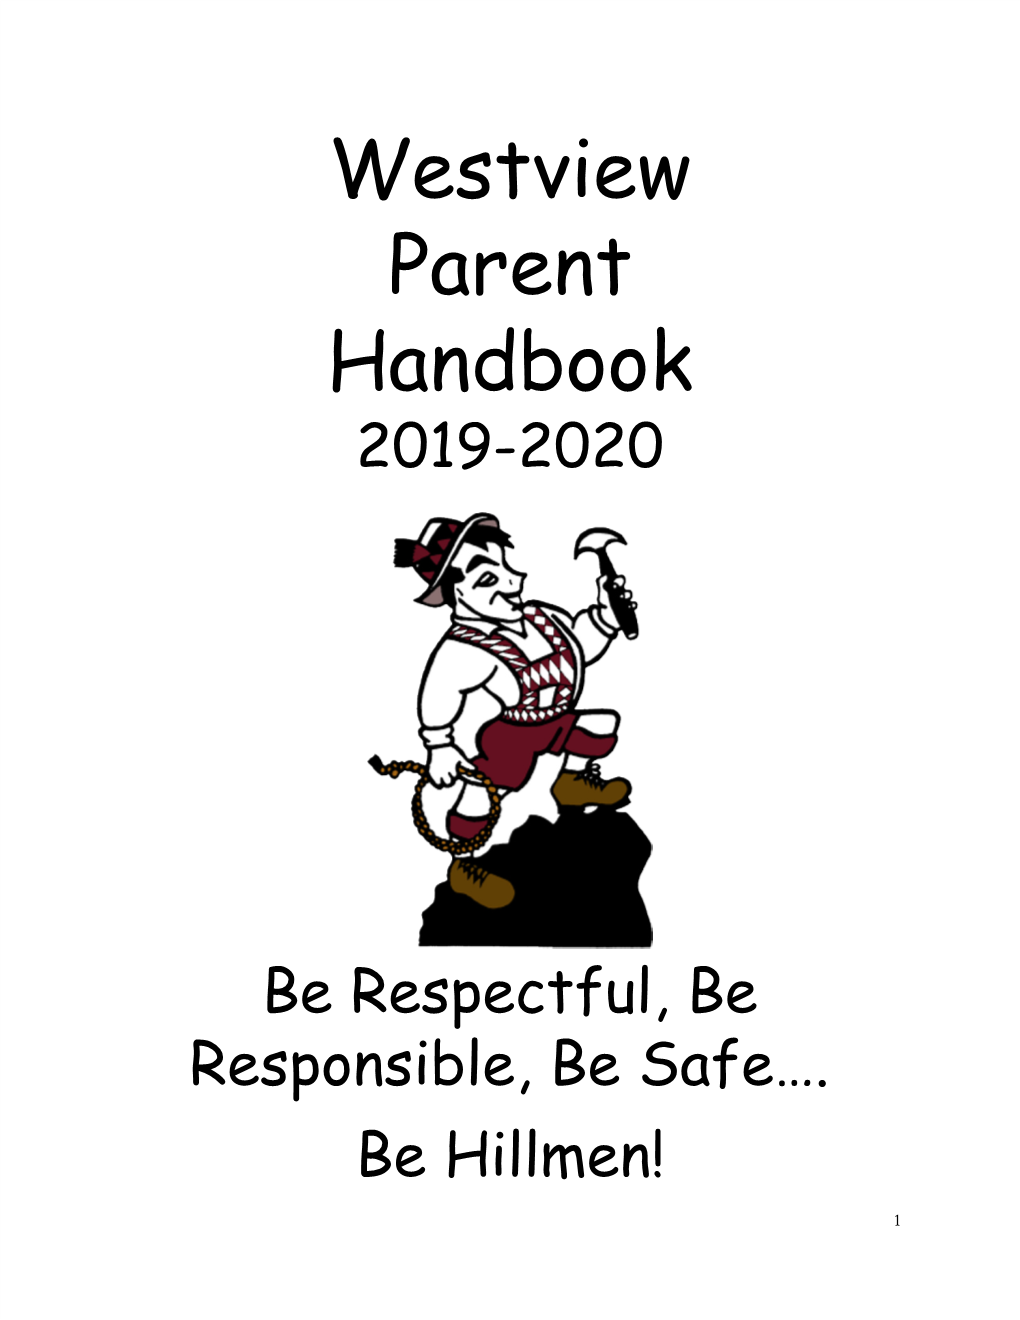 Westview Parent Handbook 2019-2020